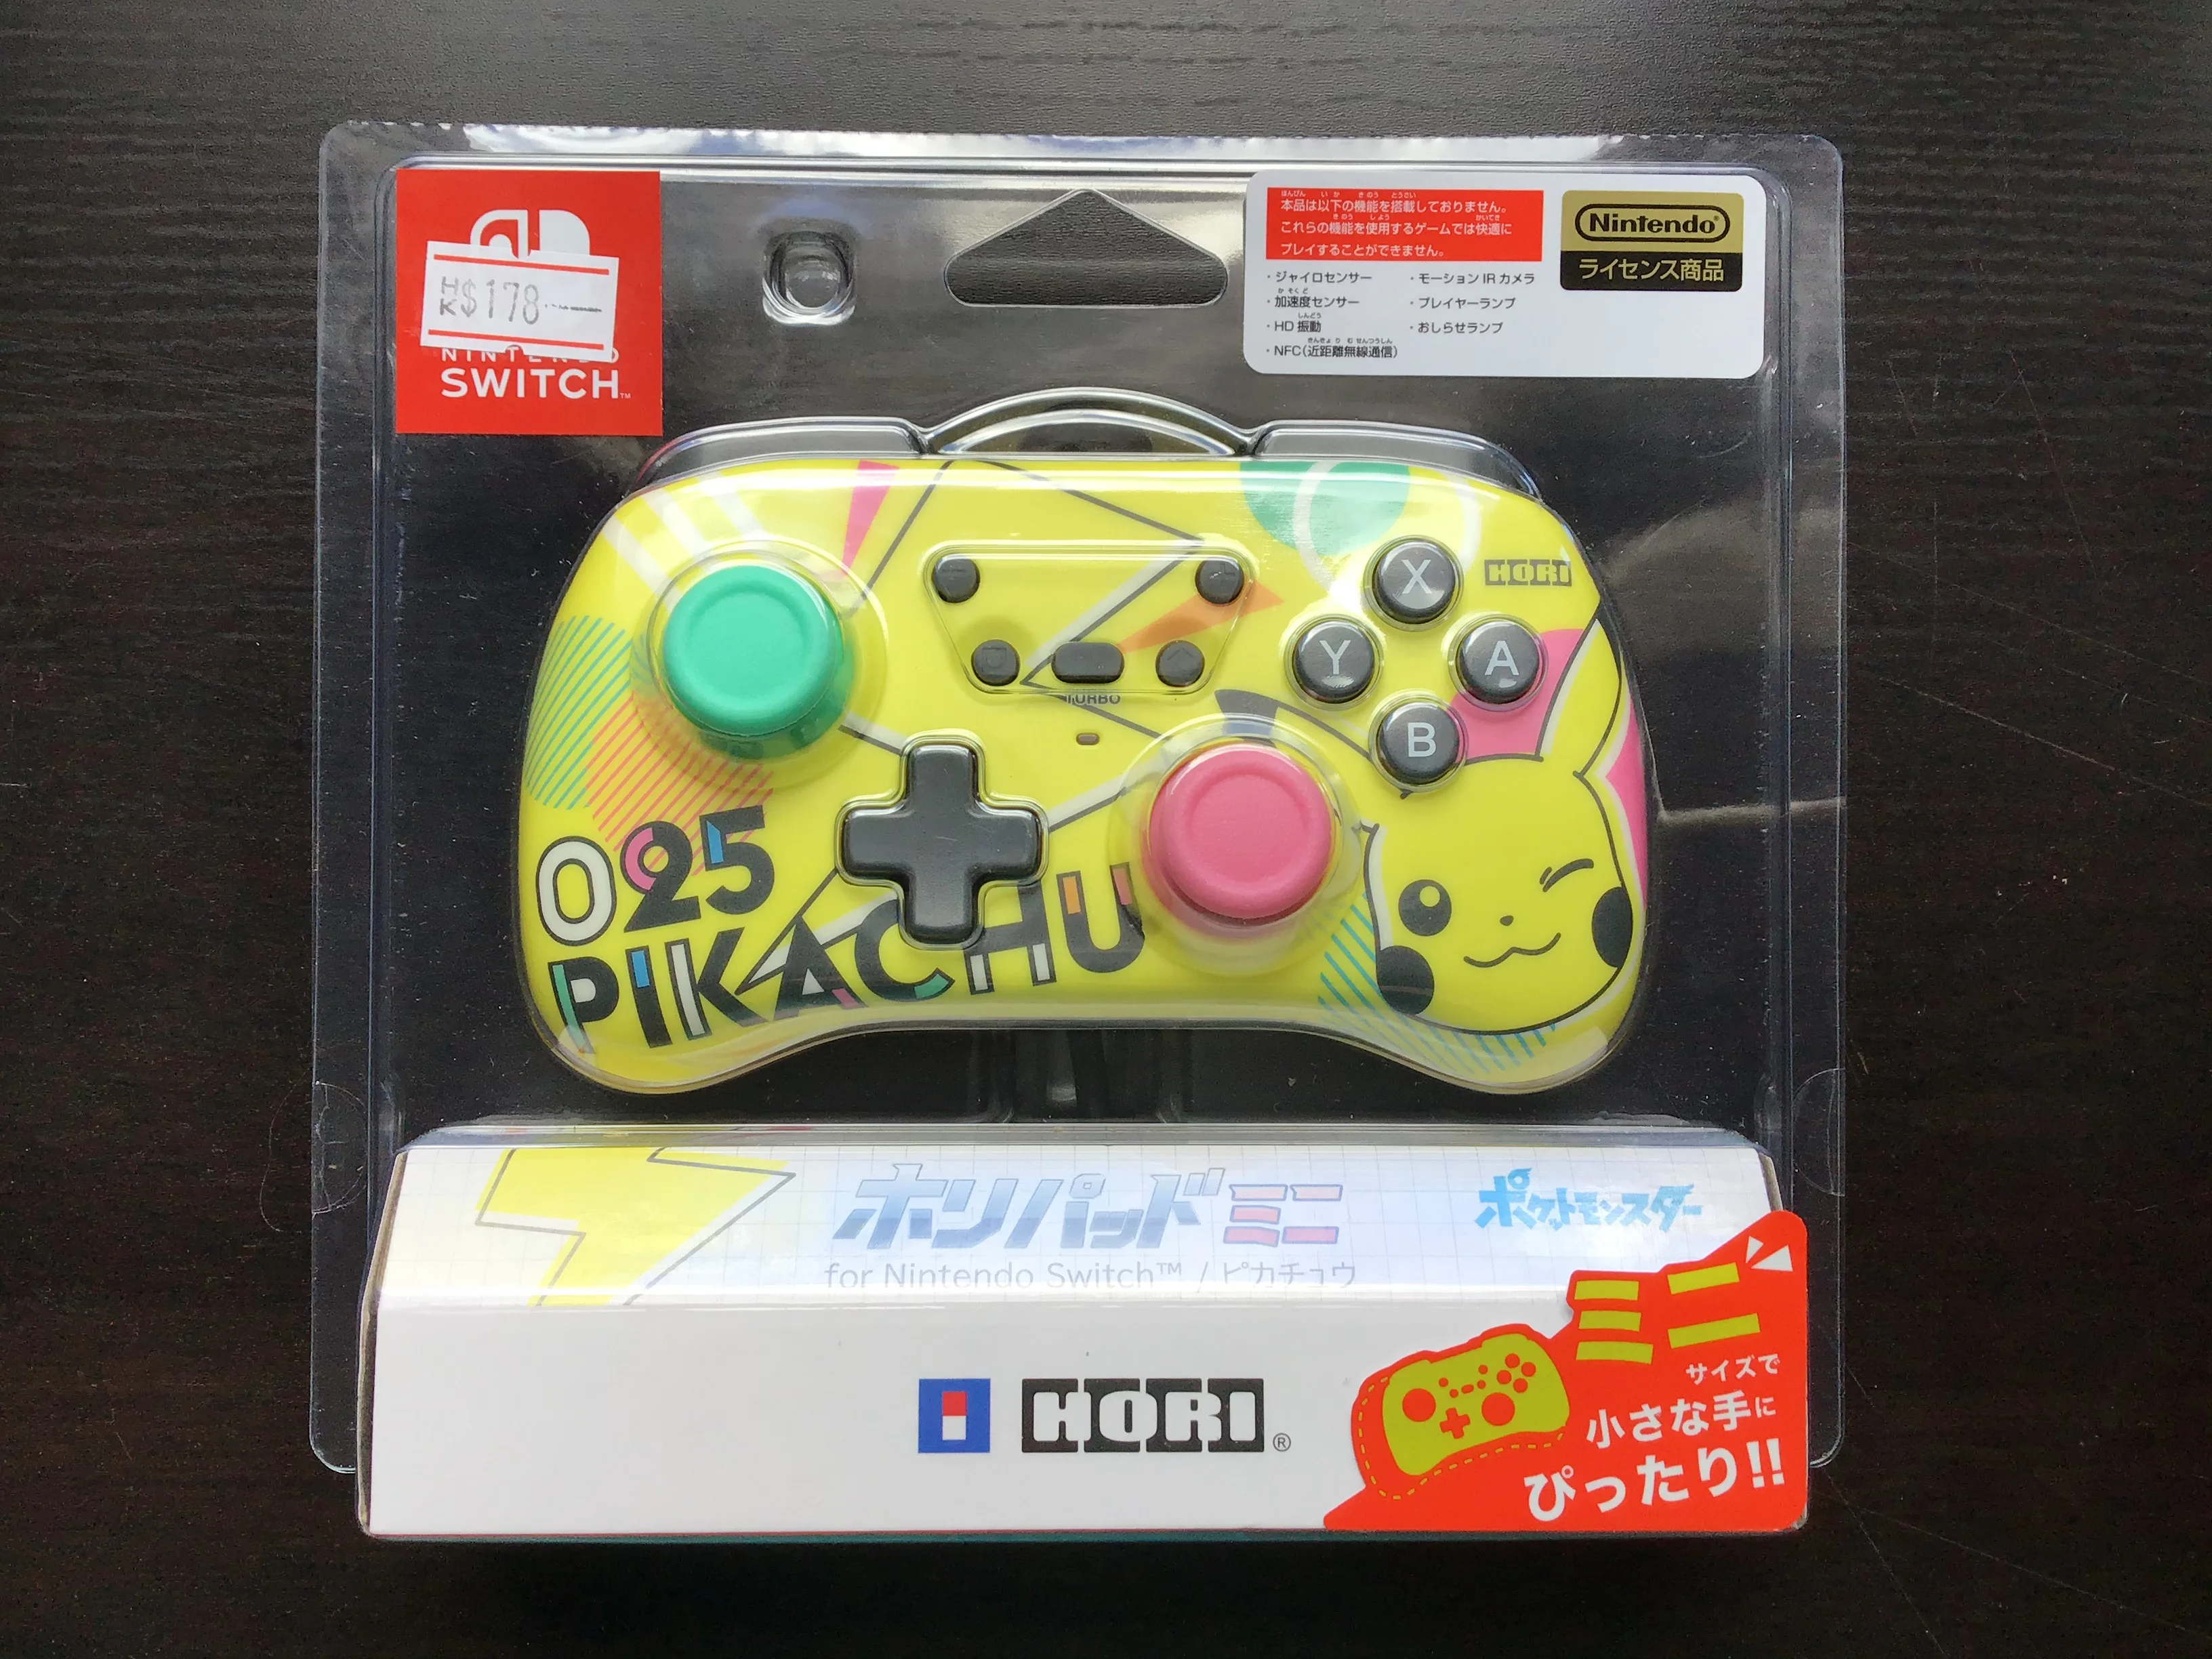  Hori Switch Pikachu Mini Controller